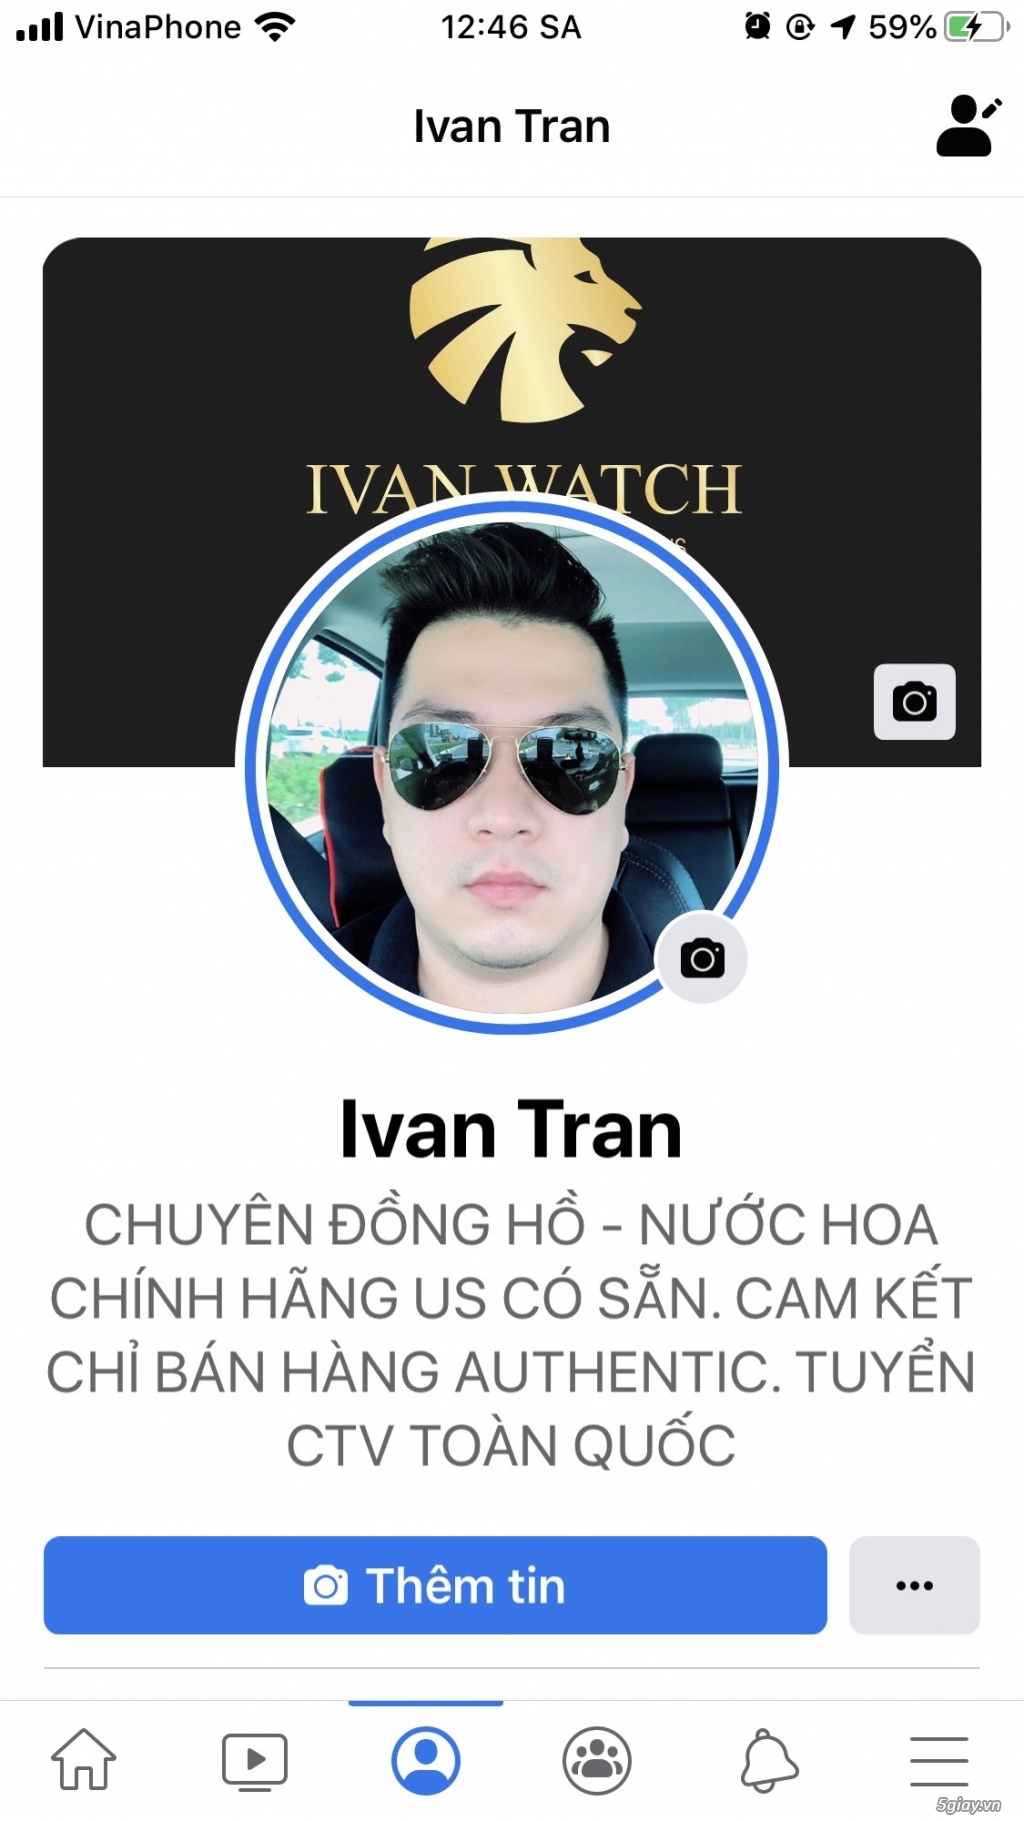 Ivan Tran Chuyên Đồng hồ xách tay US 100% - 4